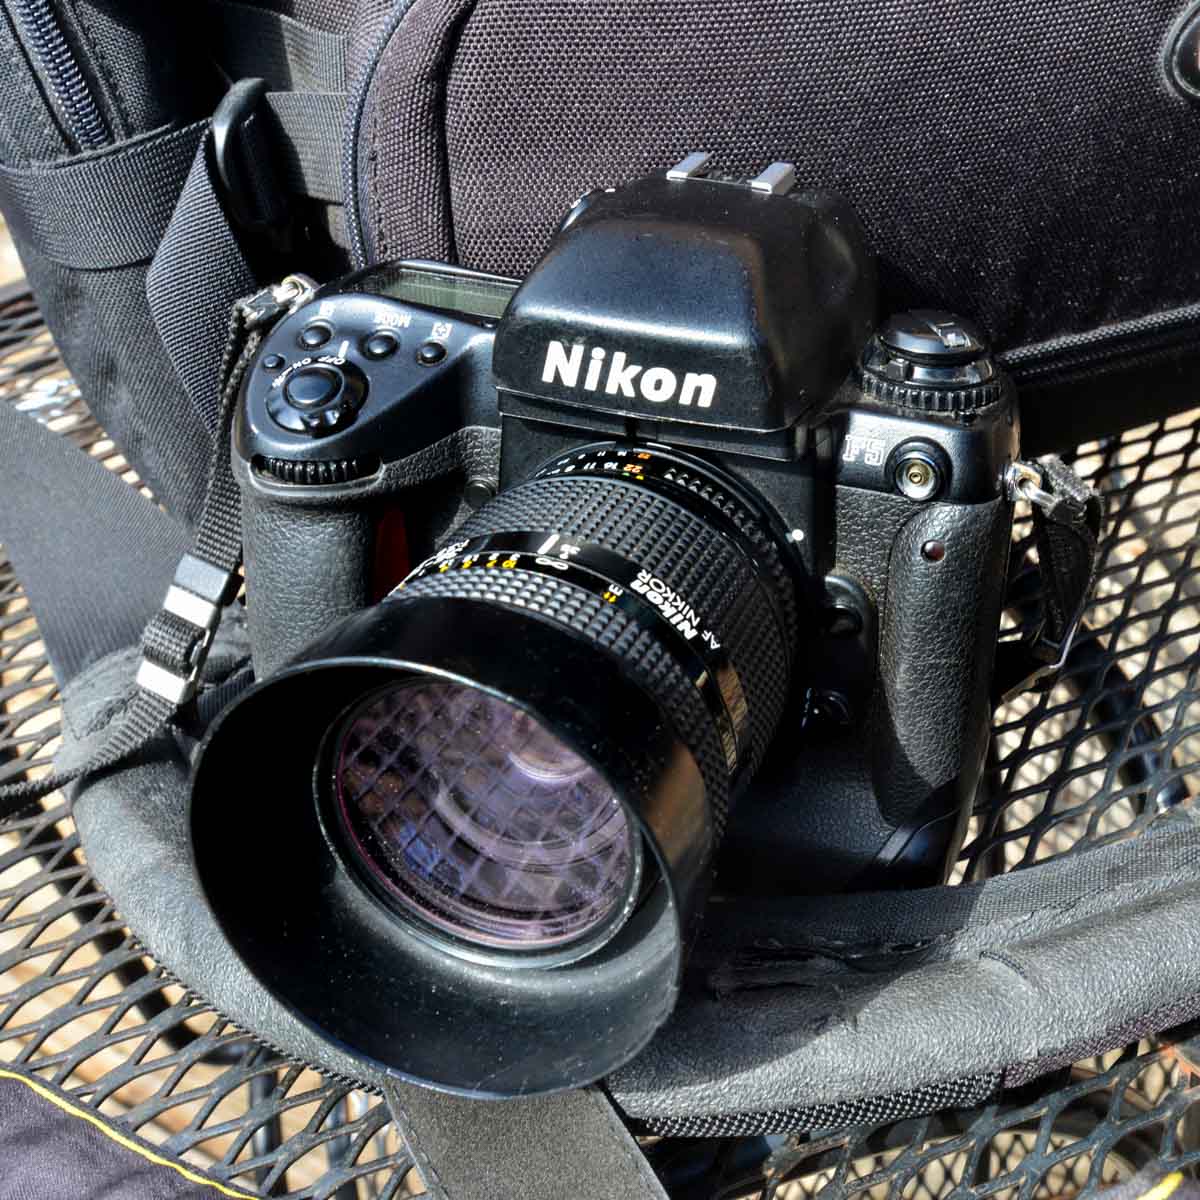 5 Frames… With Adox Scala 160 (35mm / EI 160 / Nikon F5)